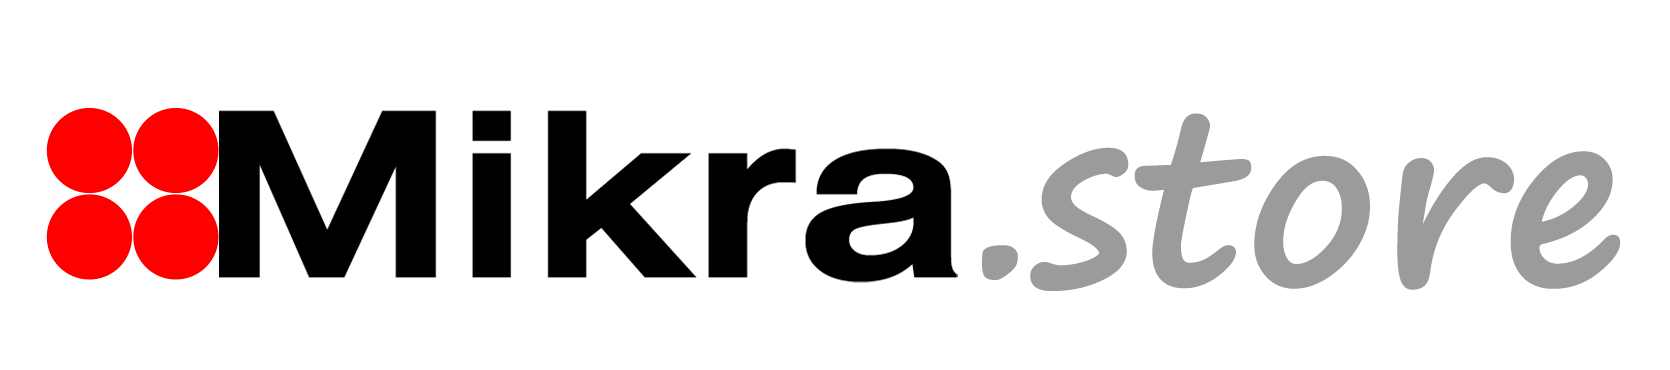 Mikra.Store es la tienda de Mikra para productos con pasarela de pago y envíos.